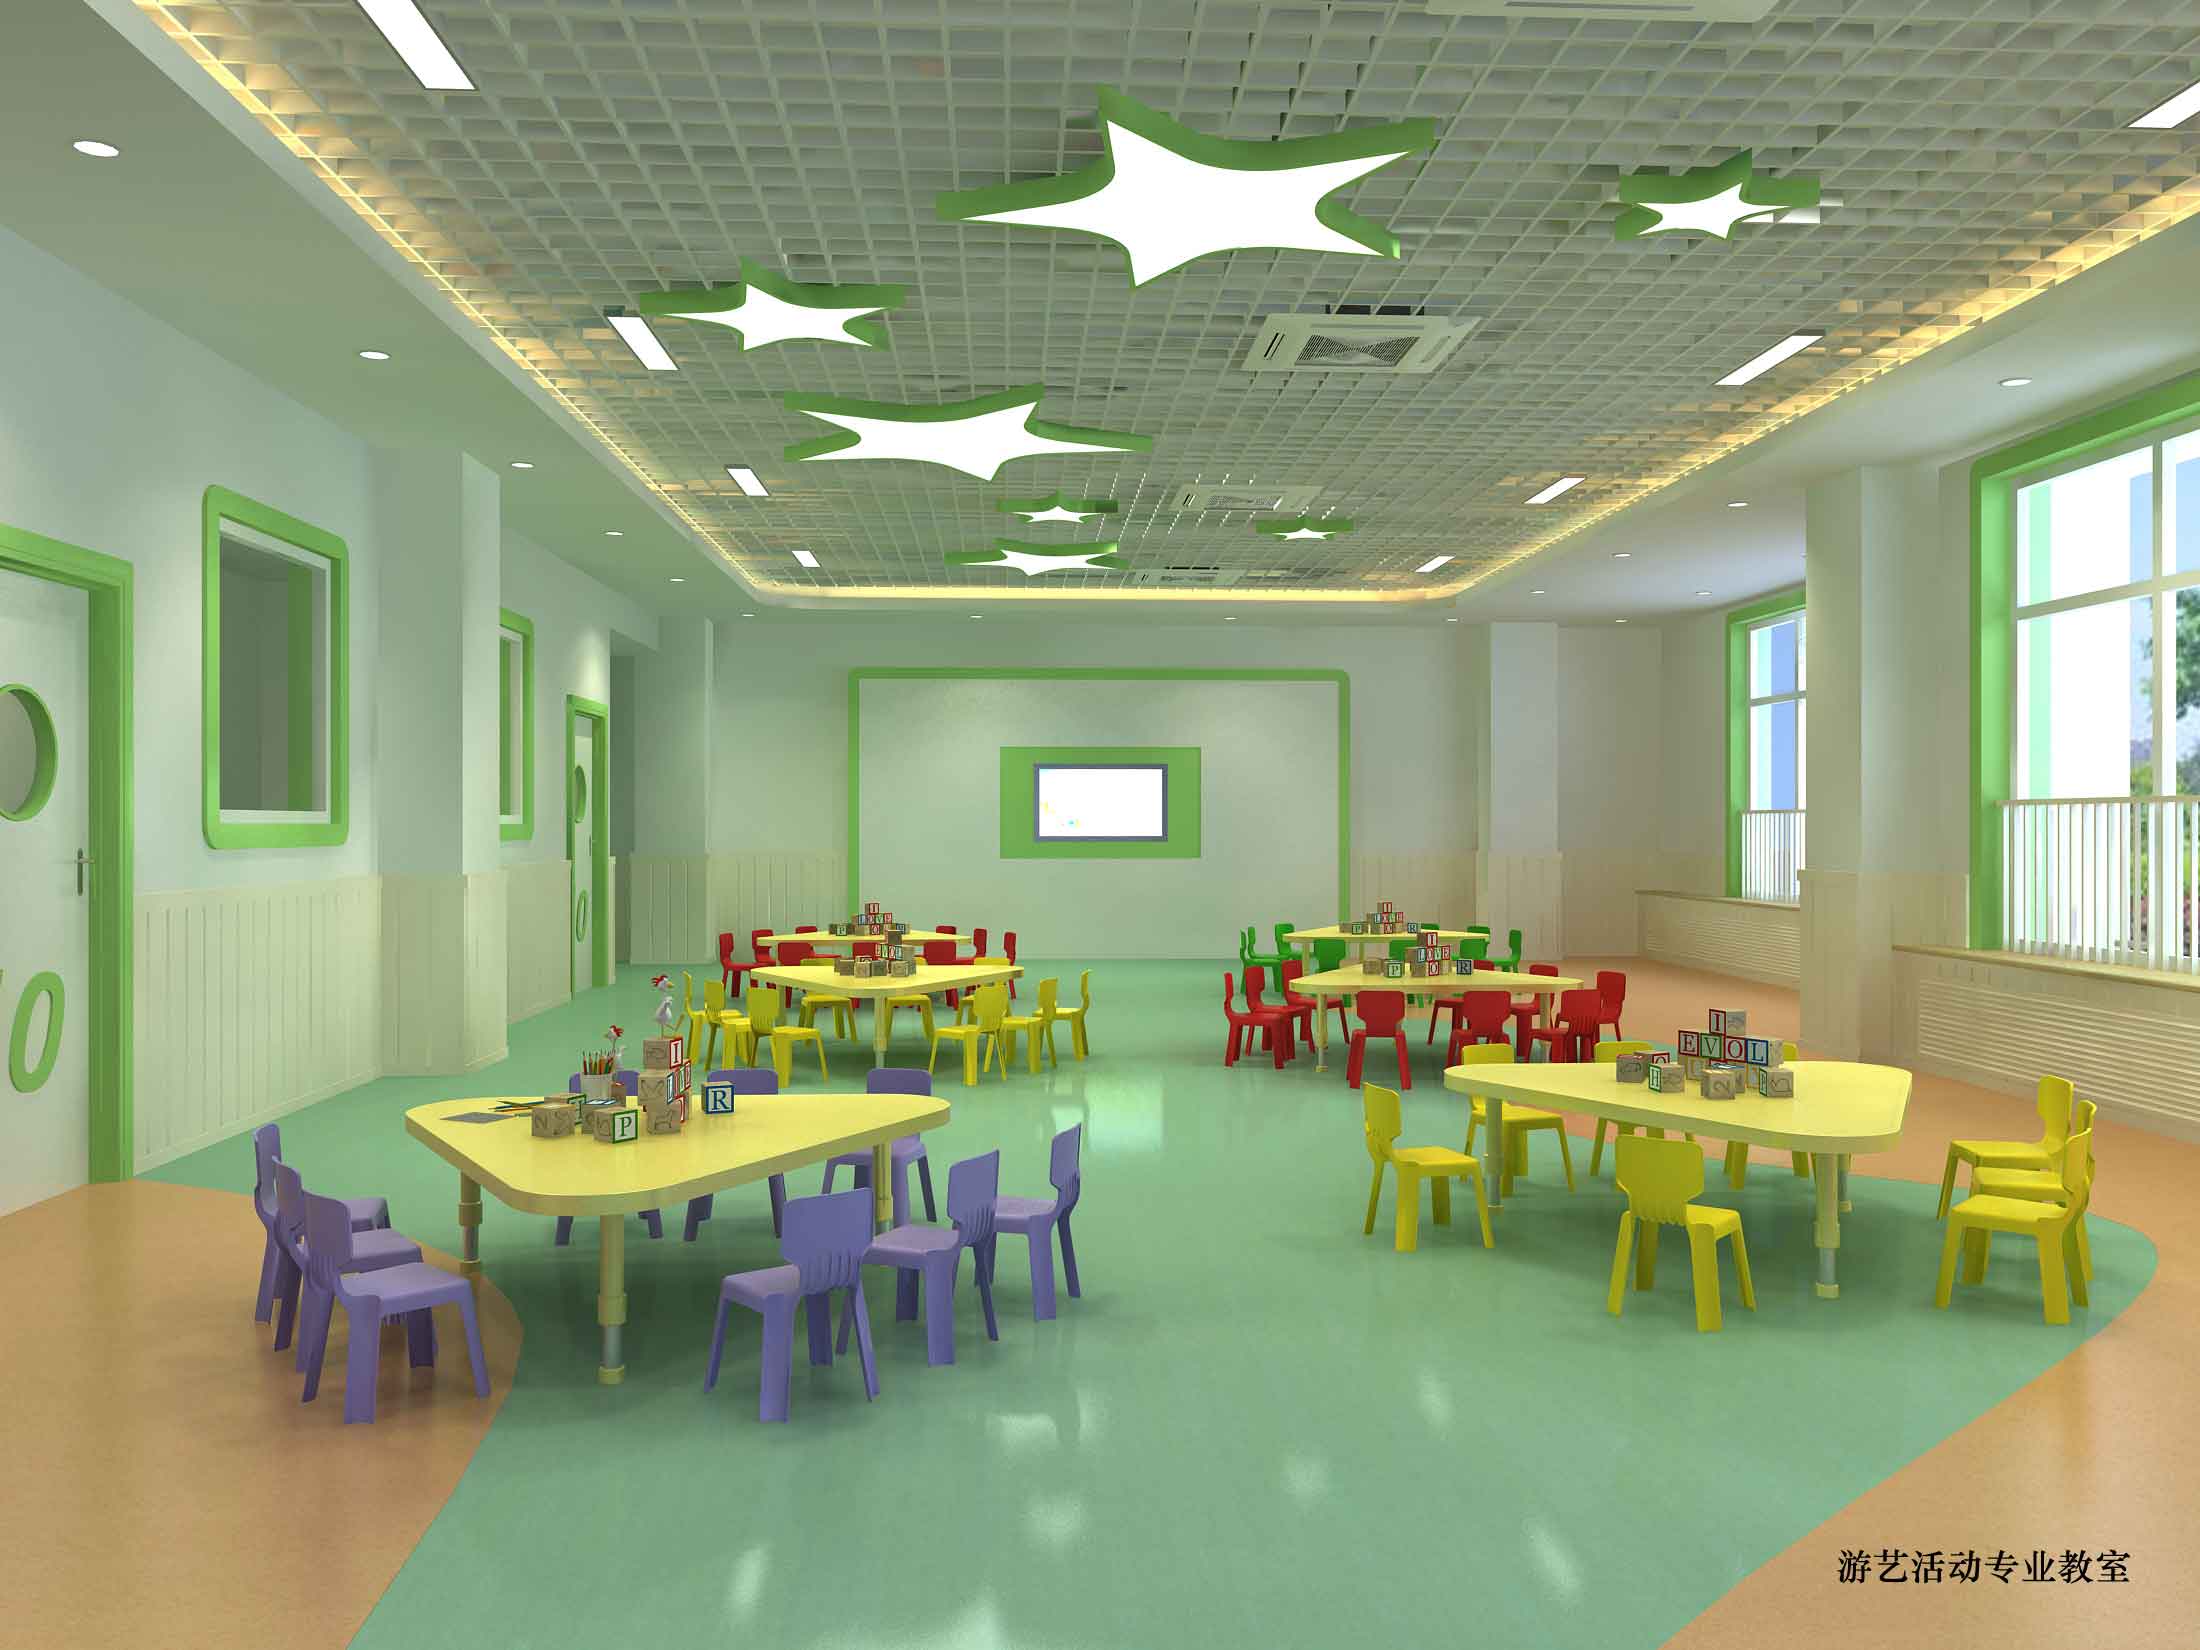 深圳市北站幼儿园装修设计选择哪家比较好 幼教设计费用